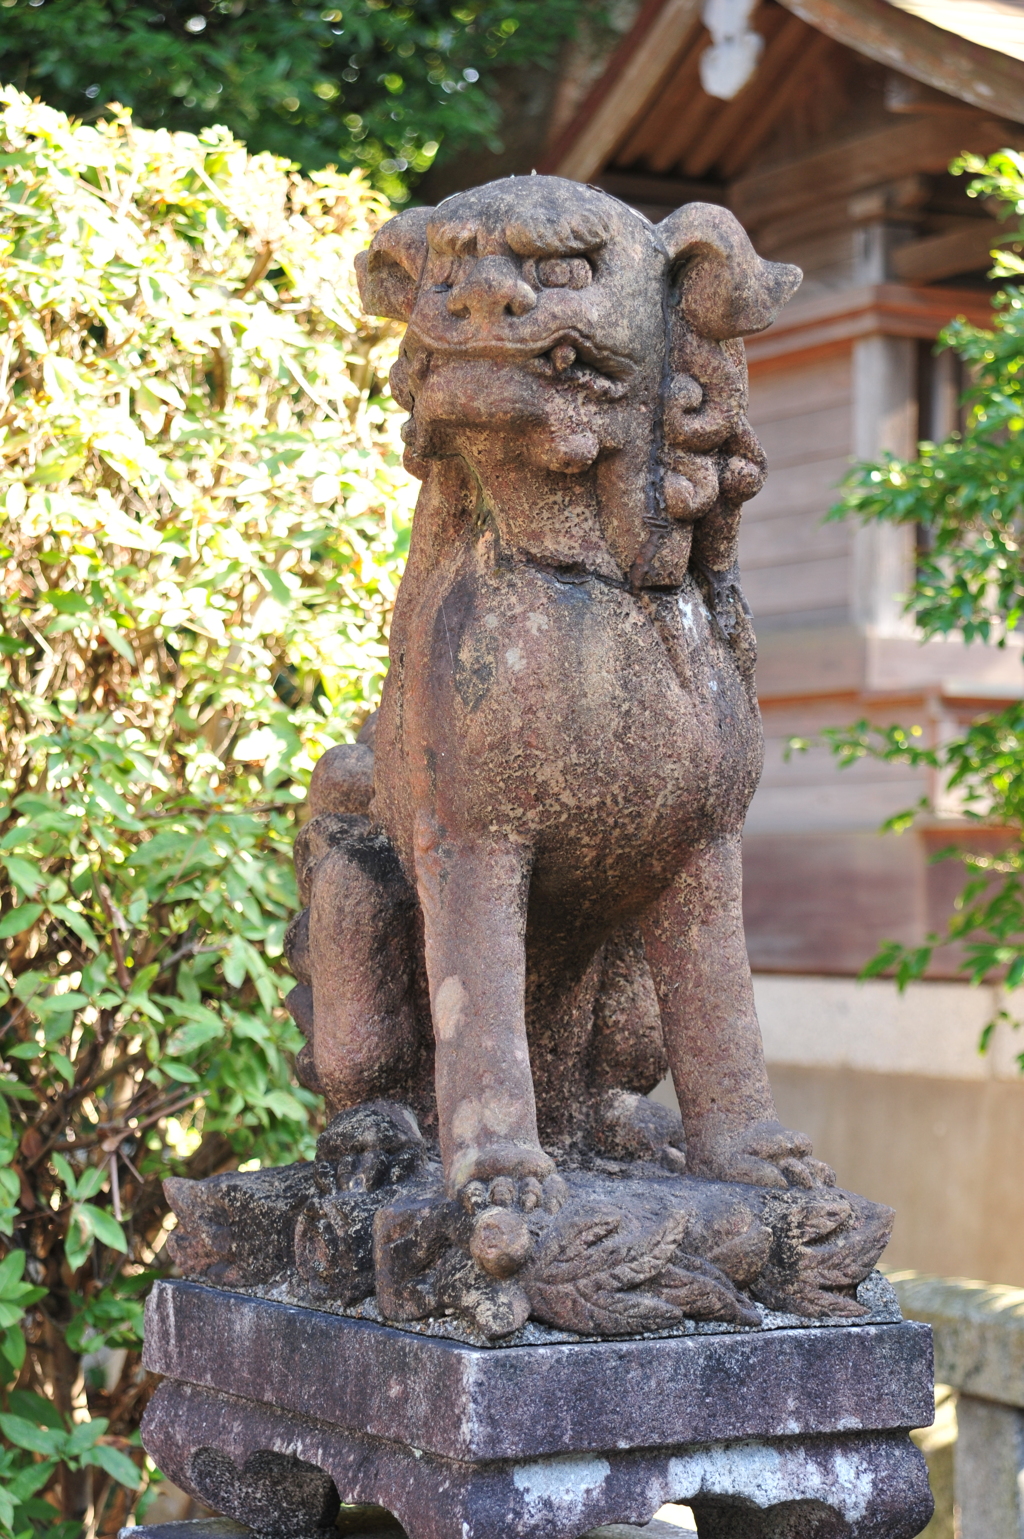 旗生神社の狛犬